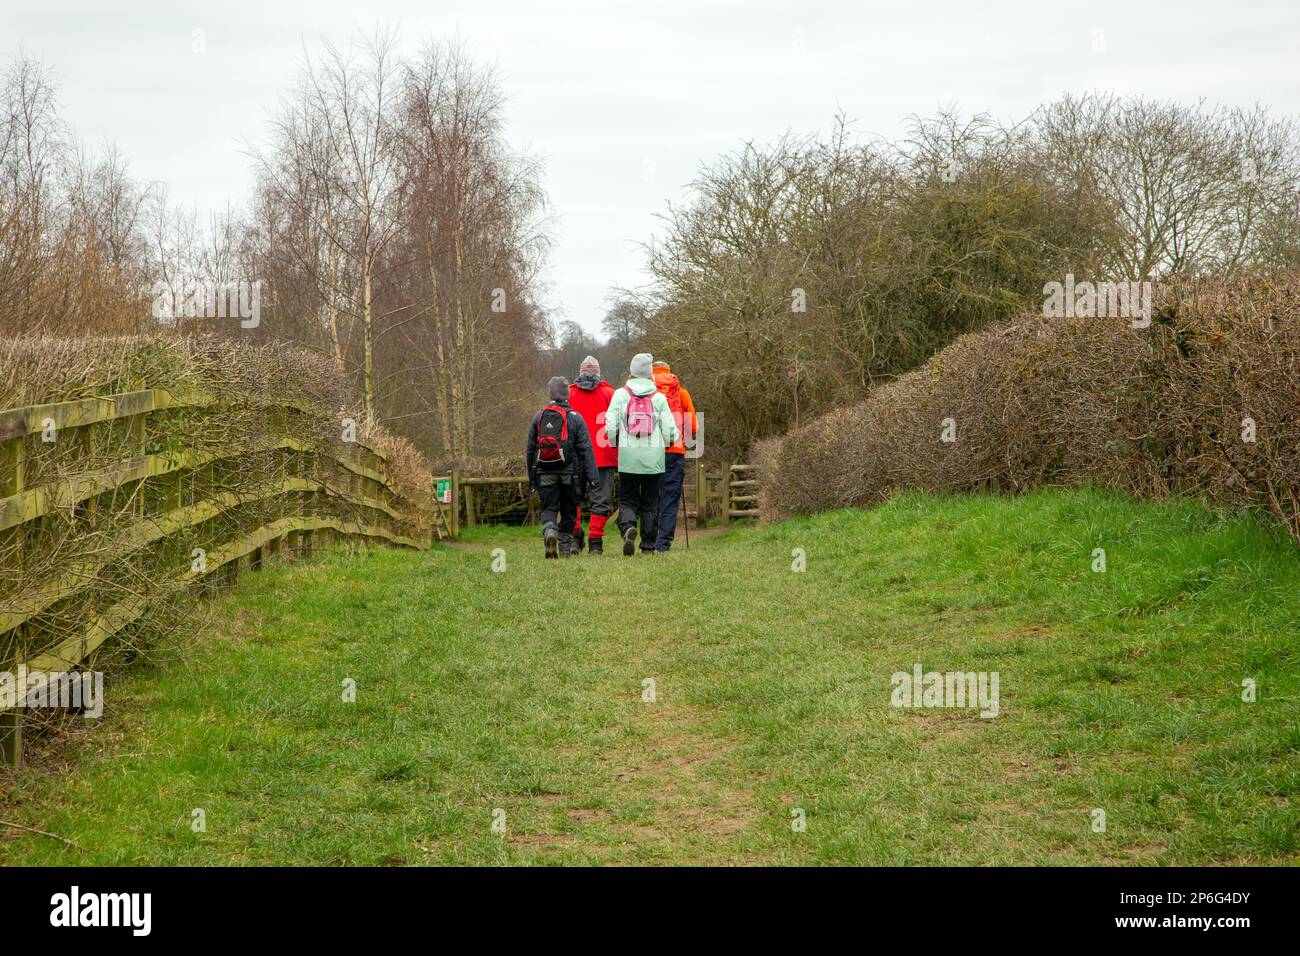 Groupe de randonneurs pays marchant le long d'un sentier public dans la campagne près de Melbourne Derbyshire Angleterre Banque D'Images